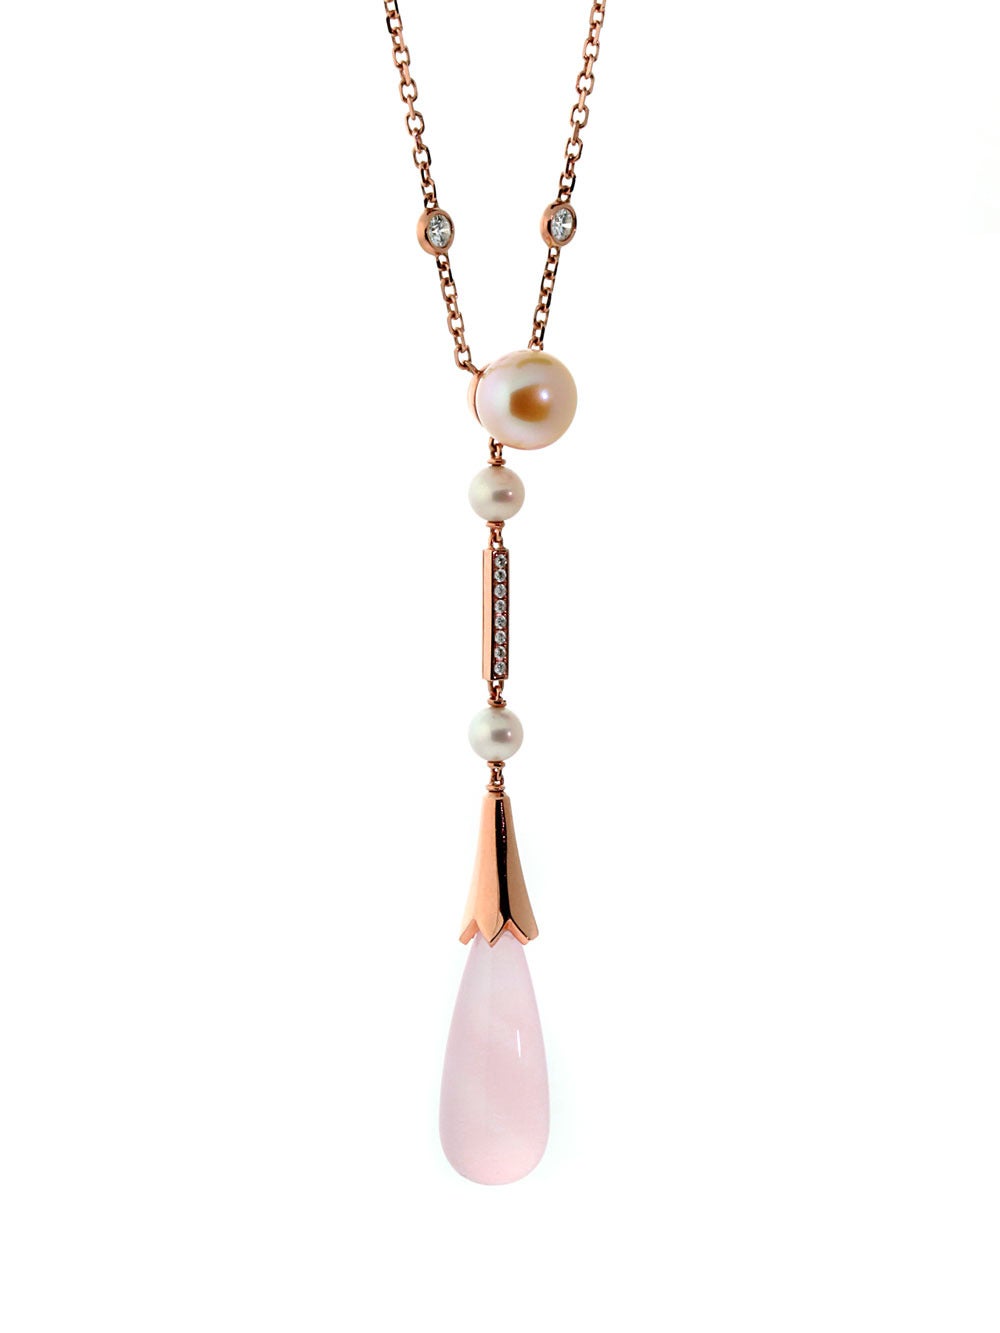 Un chef-d'œuvre de Cartier comprenant un somptueux quartz rose (17,7 ct), les plus beaux diamants ronds de taille brillant de Cartier (.24 ct), et de multiples perles (6,8 ct), le tout serti en or rose 18k.

Longueur du collier : 15 3/4″
Dimensions